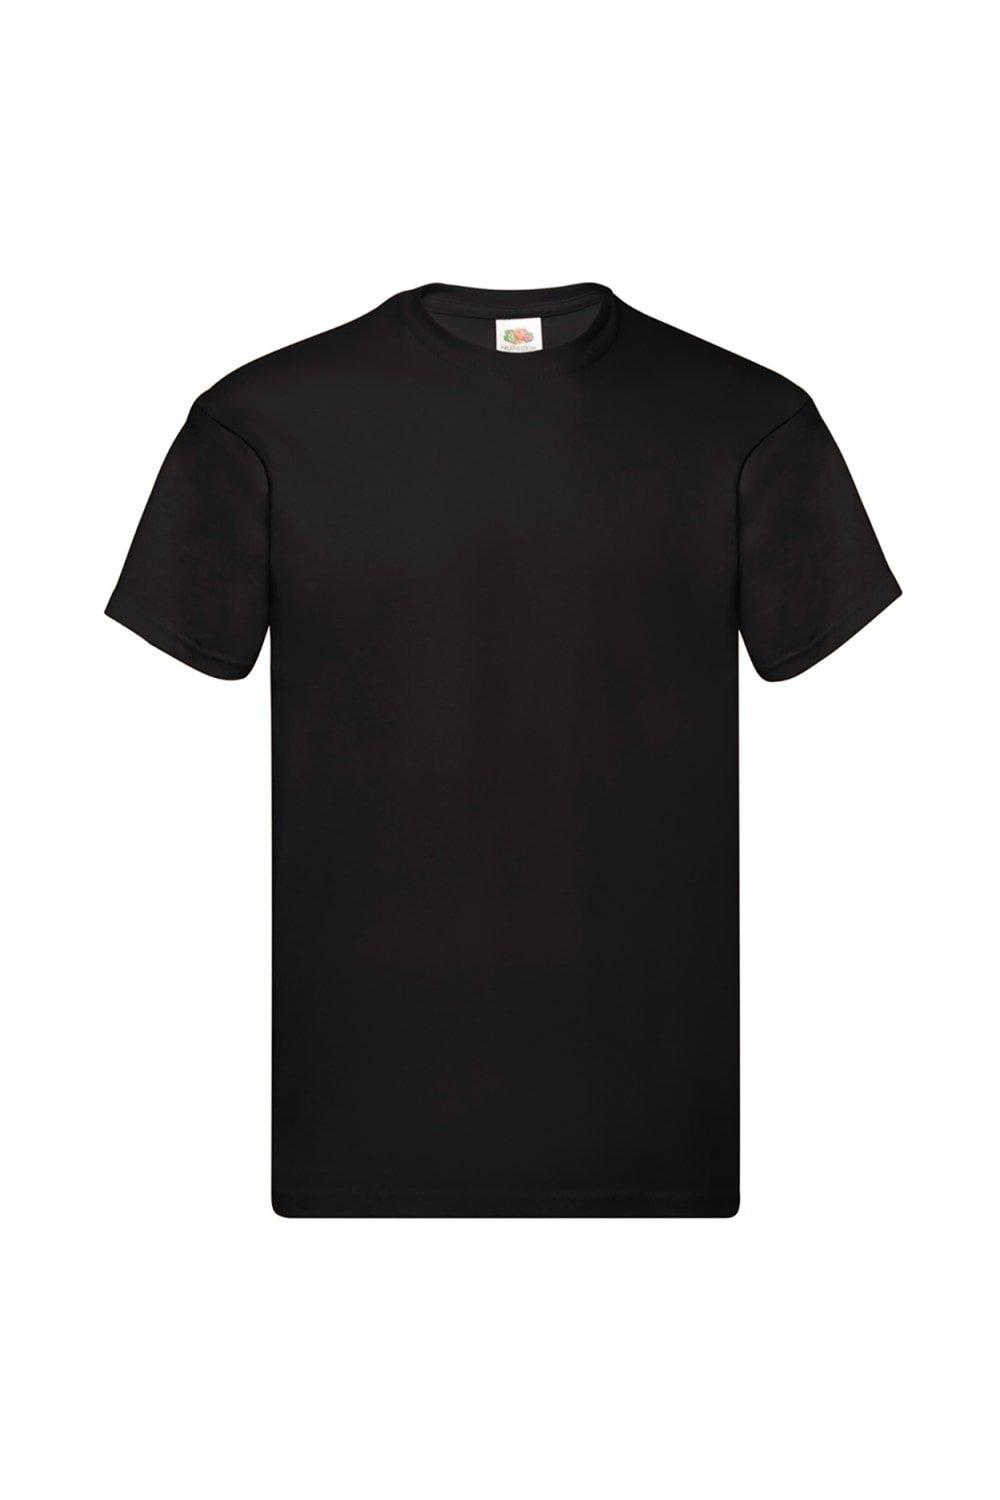 Оригинальная футболка с коротким рукавом Fruit of the Loom, черный